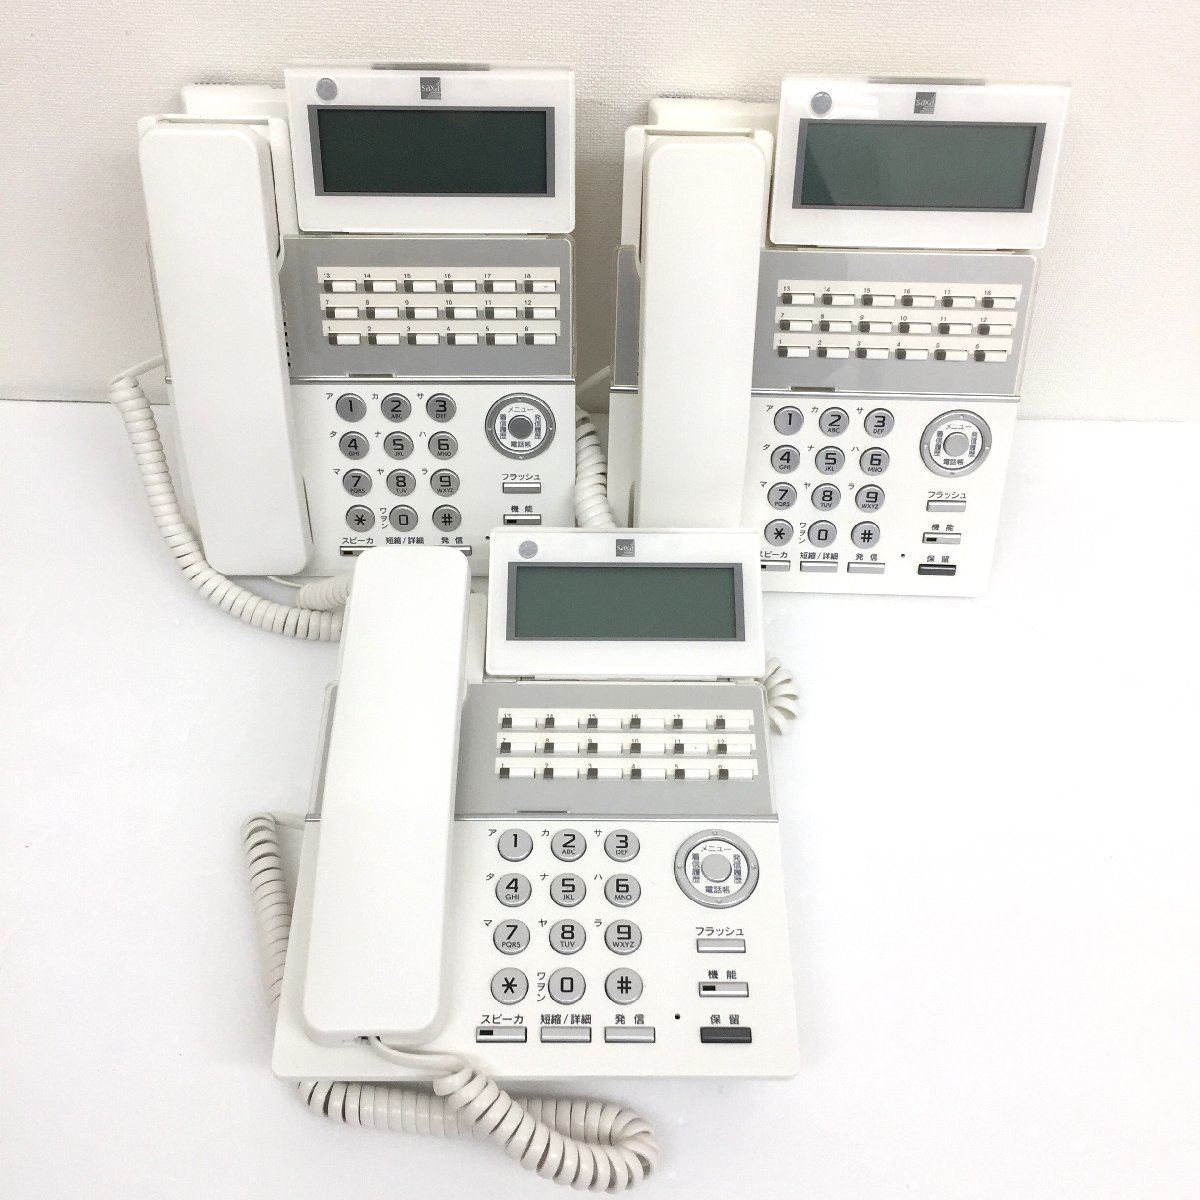 サクサ ビジネスフォン TD810(W) 18ボタン 電話機　3台セット